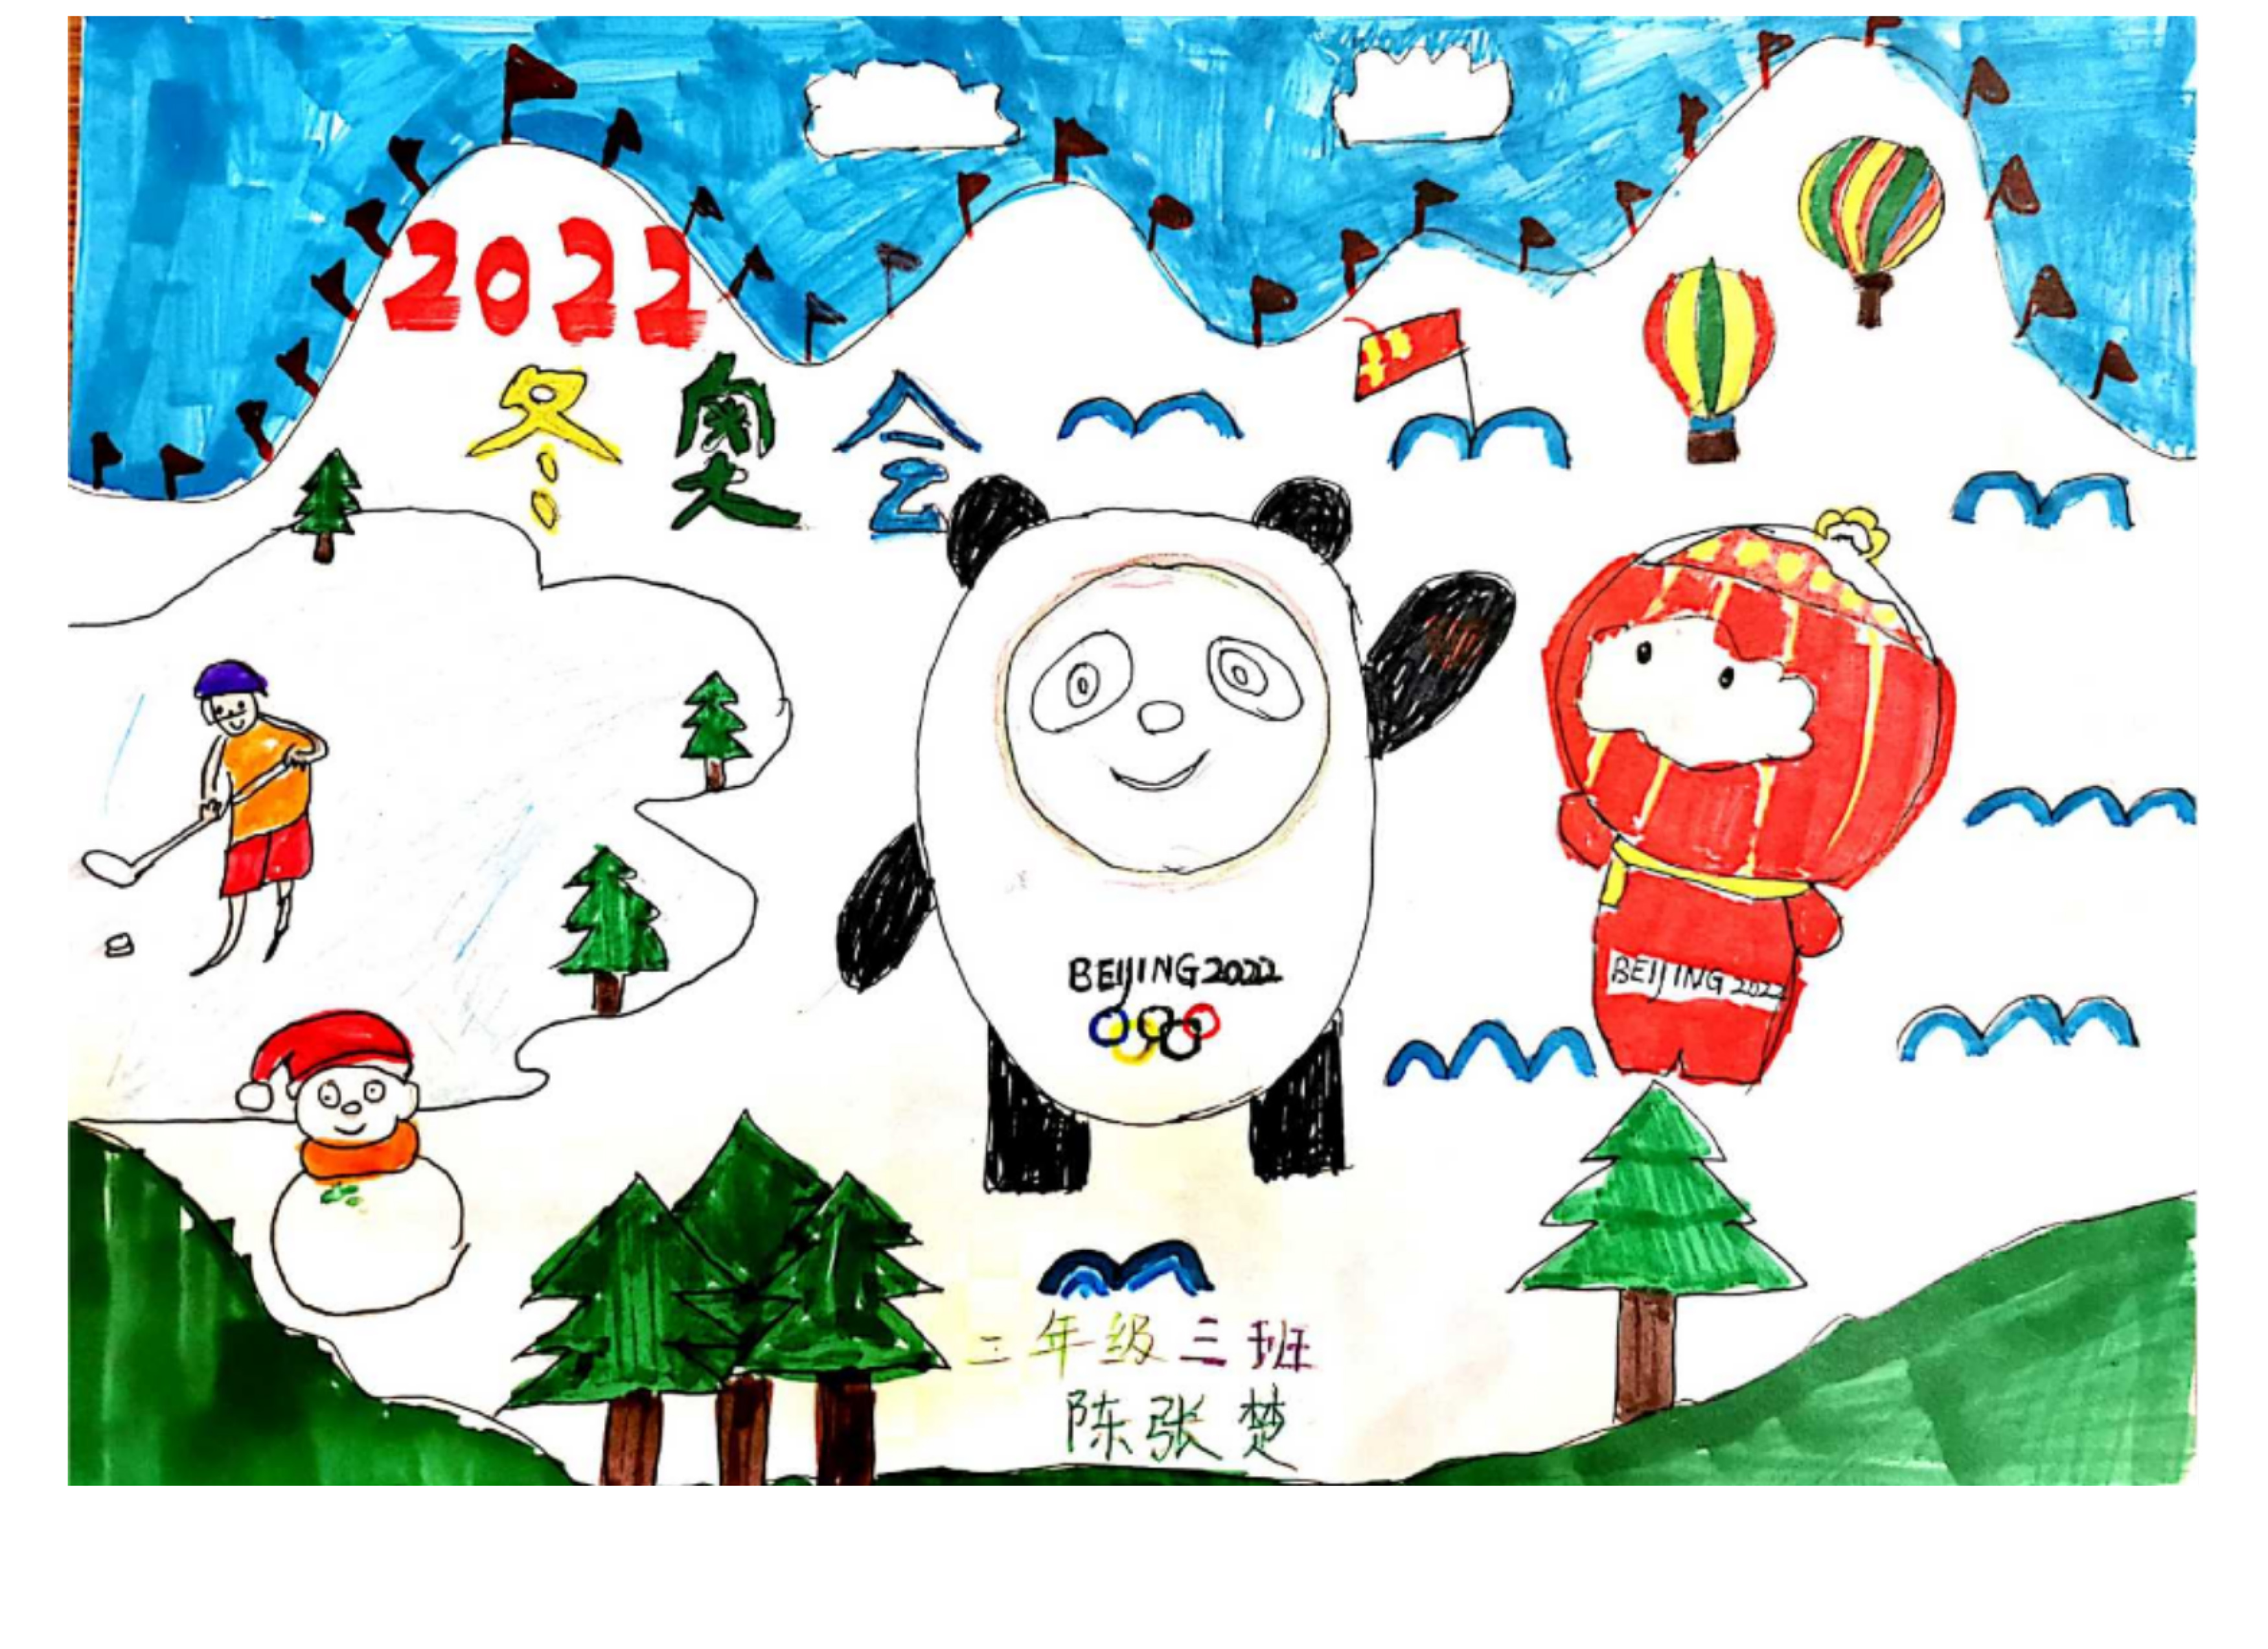 《激情冰雪 相约冬奥》 Let's Meet In The Snow World Of The Winter Olympics+陈张楚 Chen Zhangchu+8+18633833122